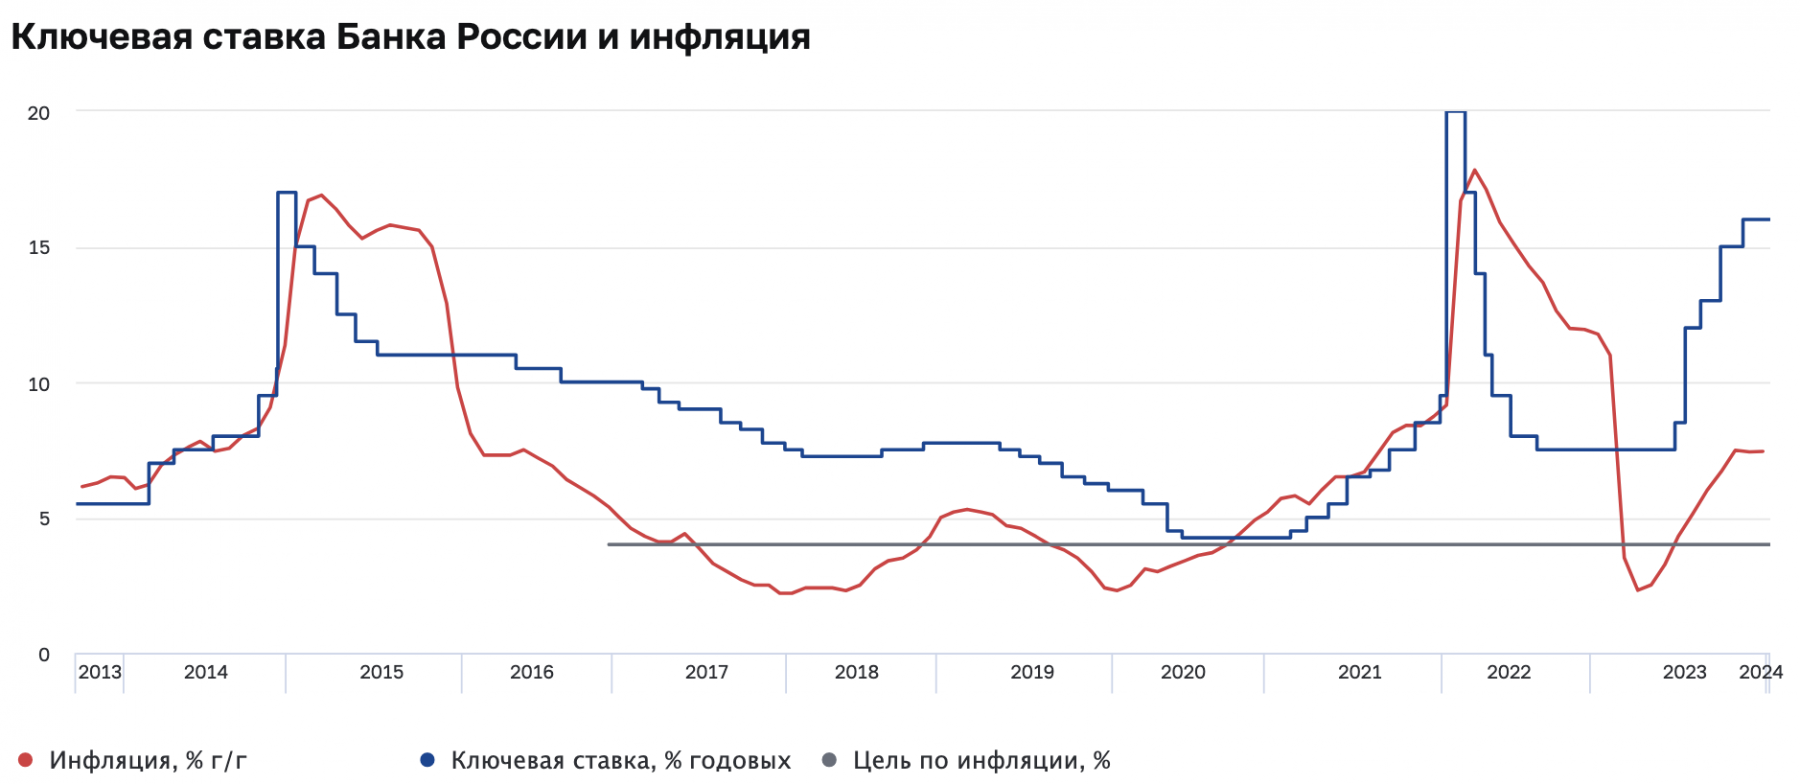 Вышли данные по инфляции в России за январь 2024 г. Что ждать от ЦБ?